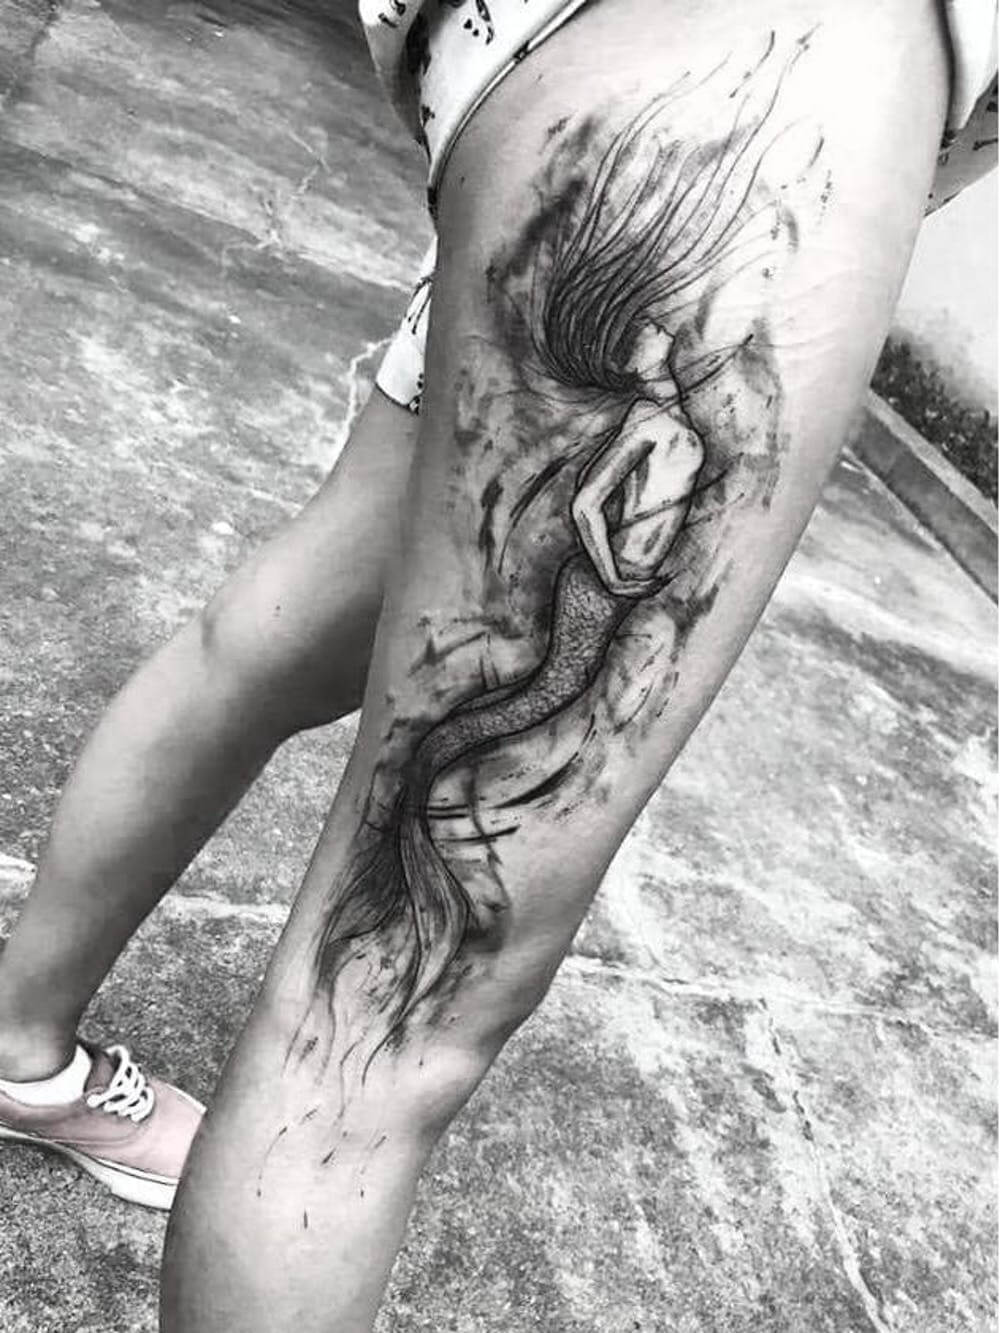 inspiringlife.pt - 17 fantásticas tattoos blackwork para os apaixonados por tatuagens